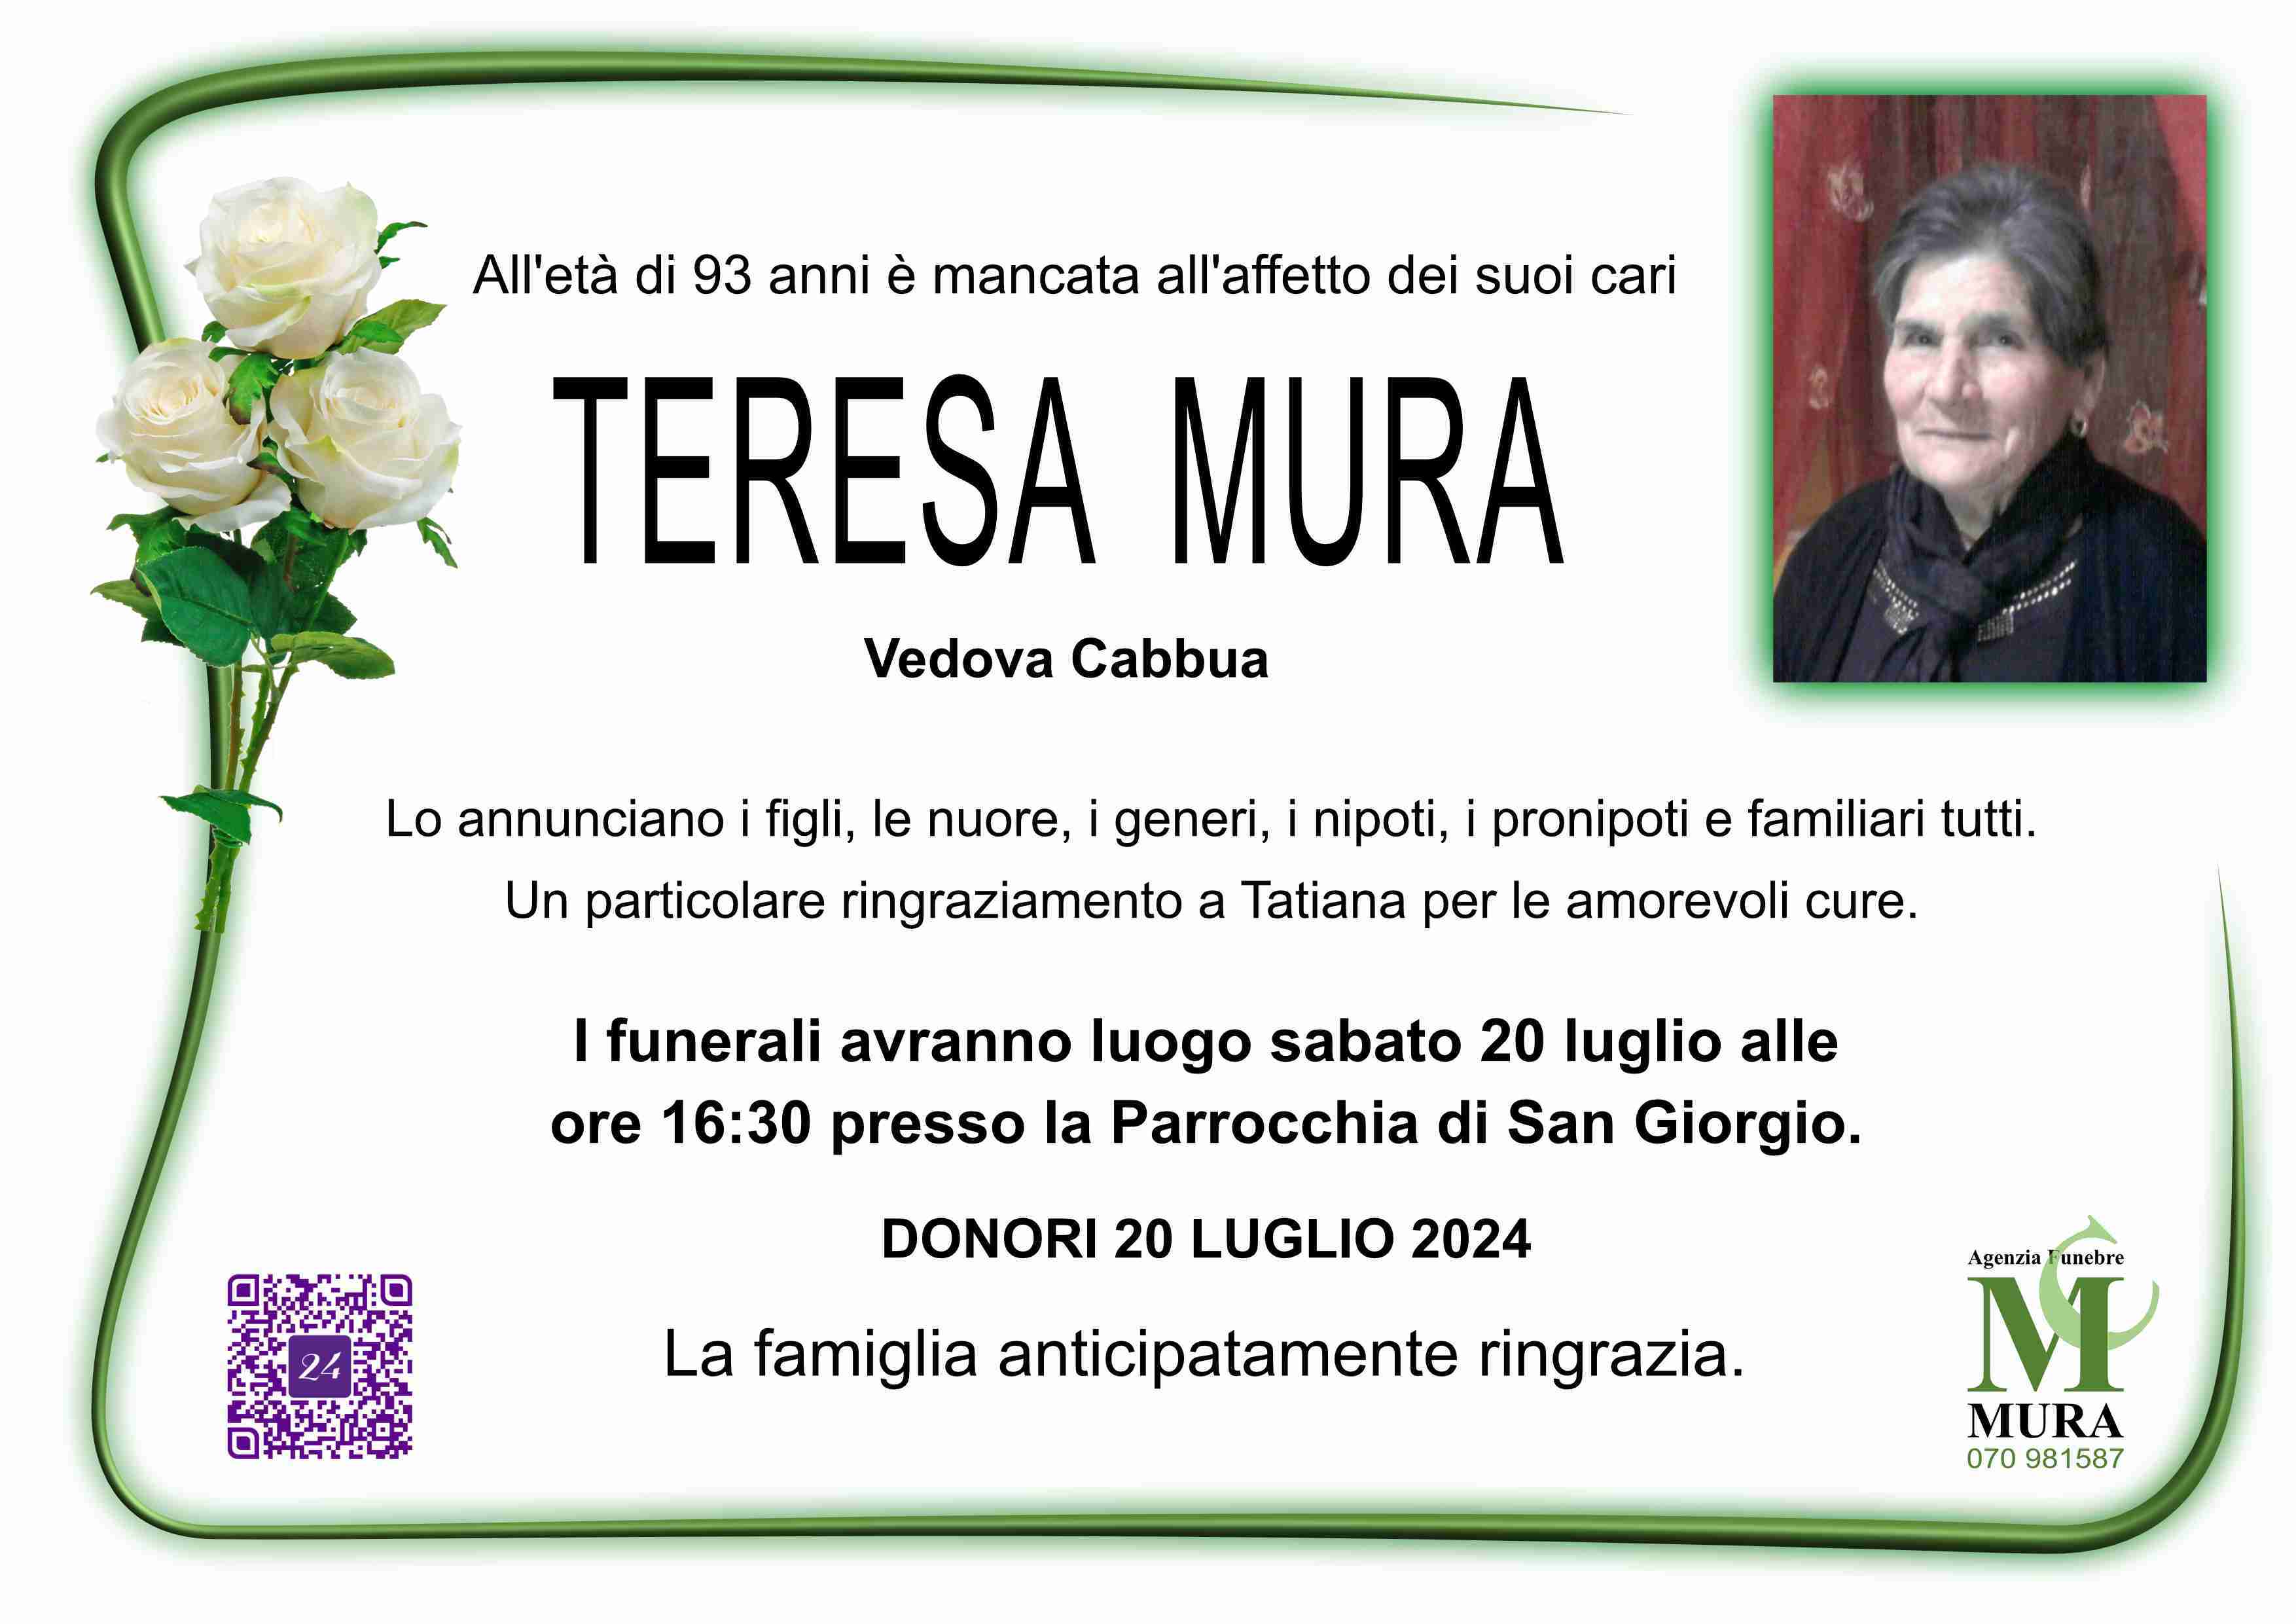 Teresa Mura